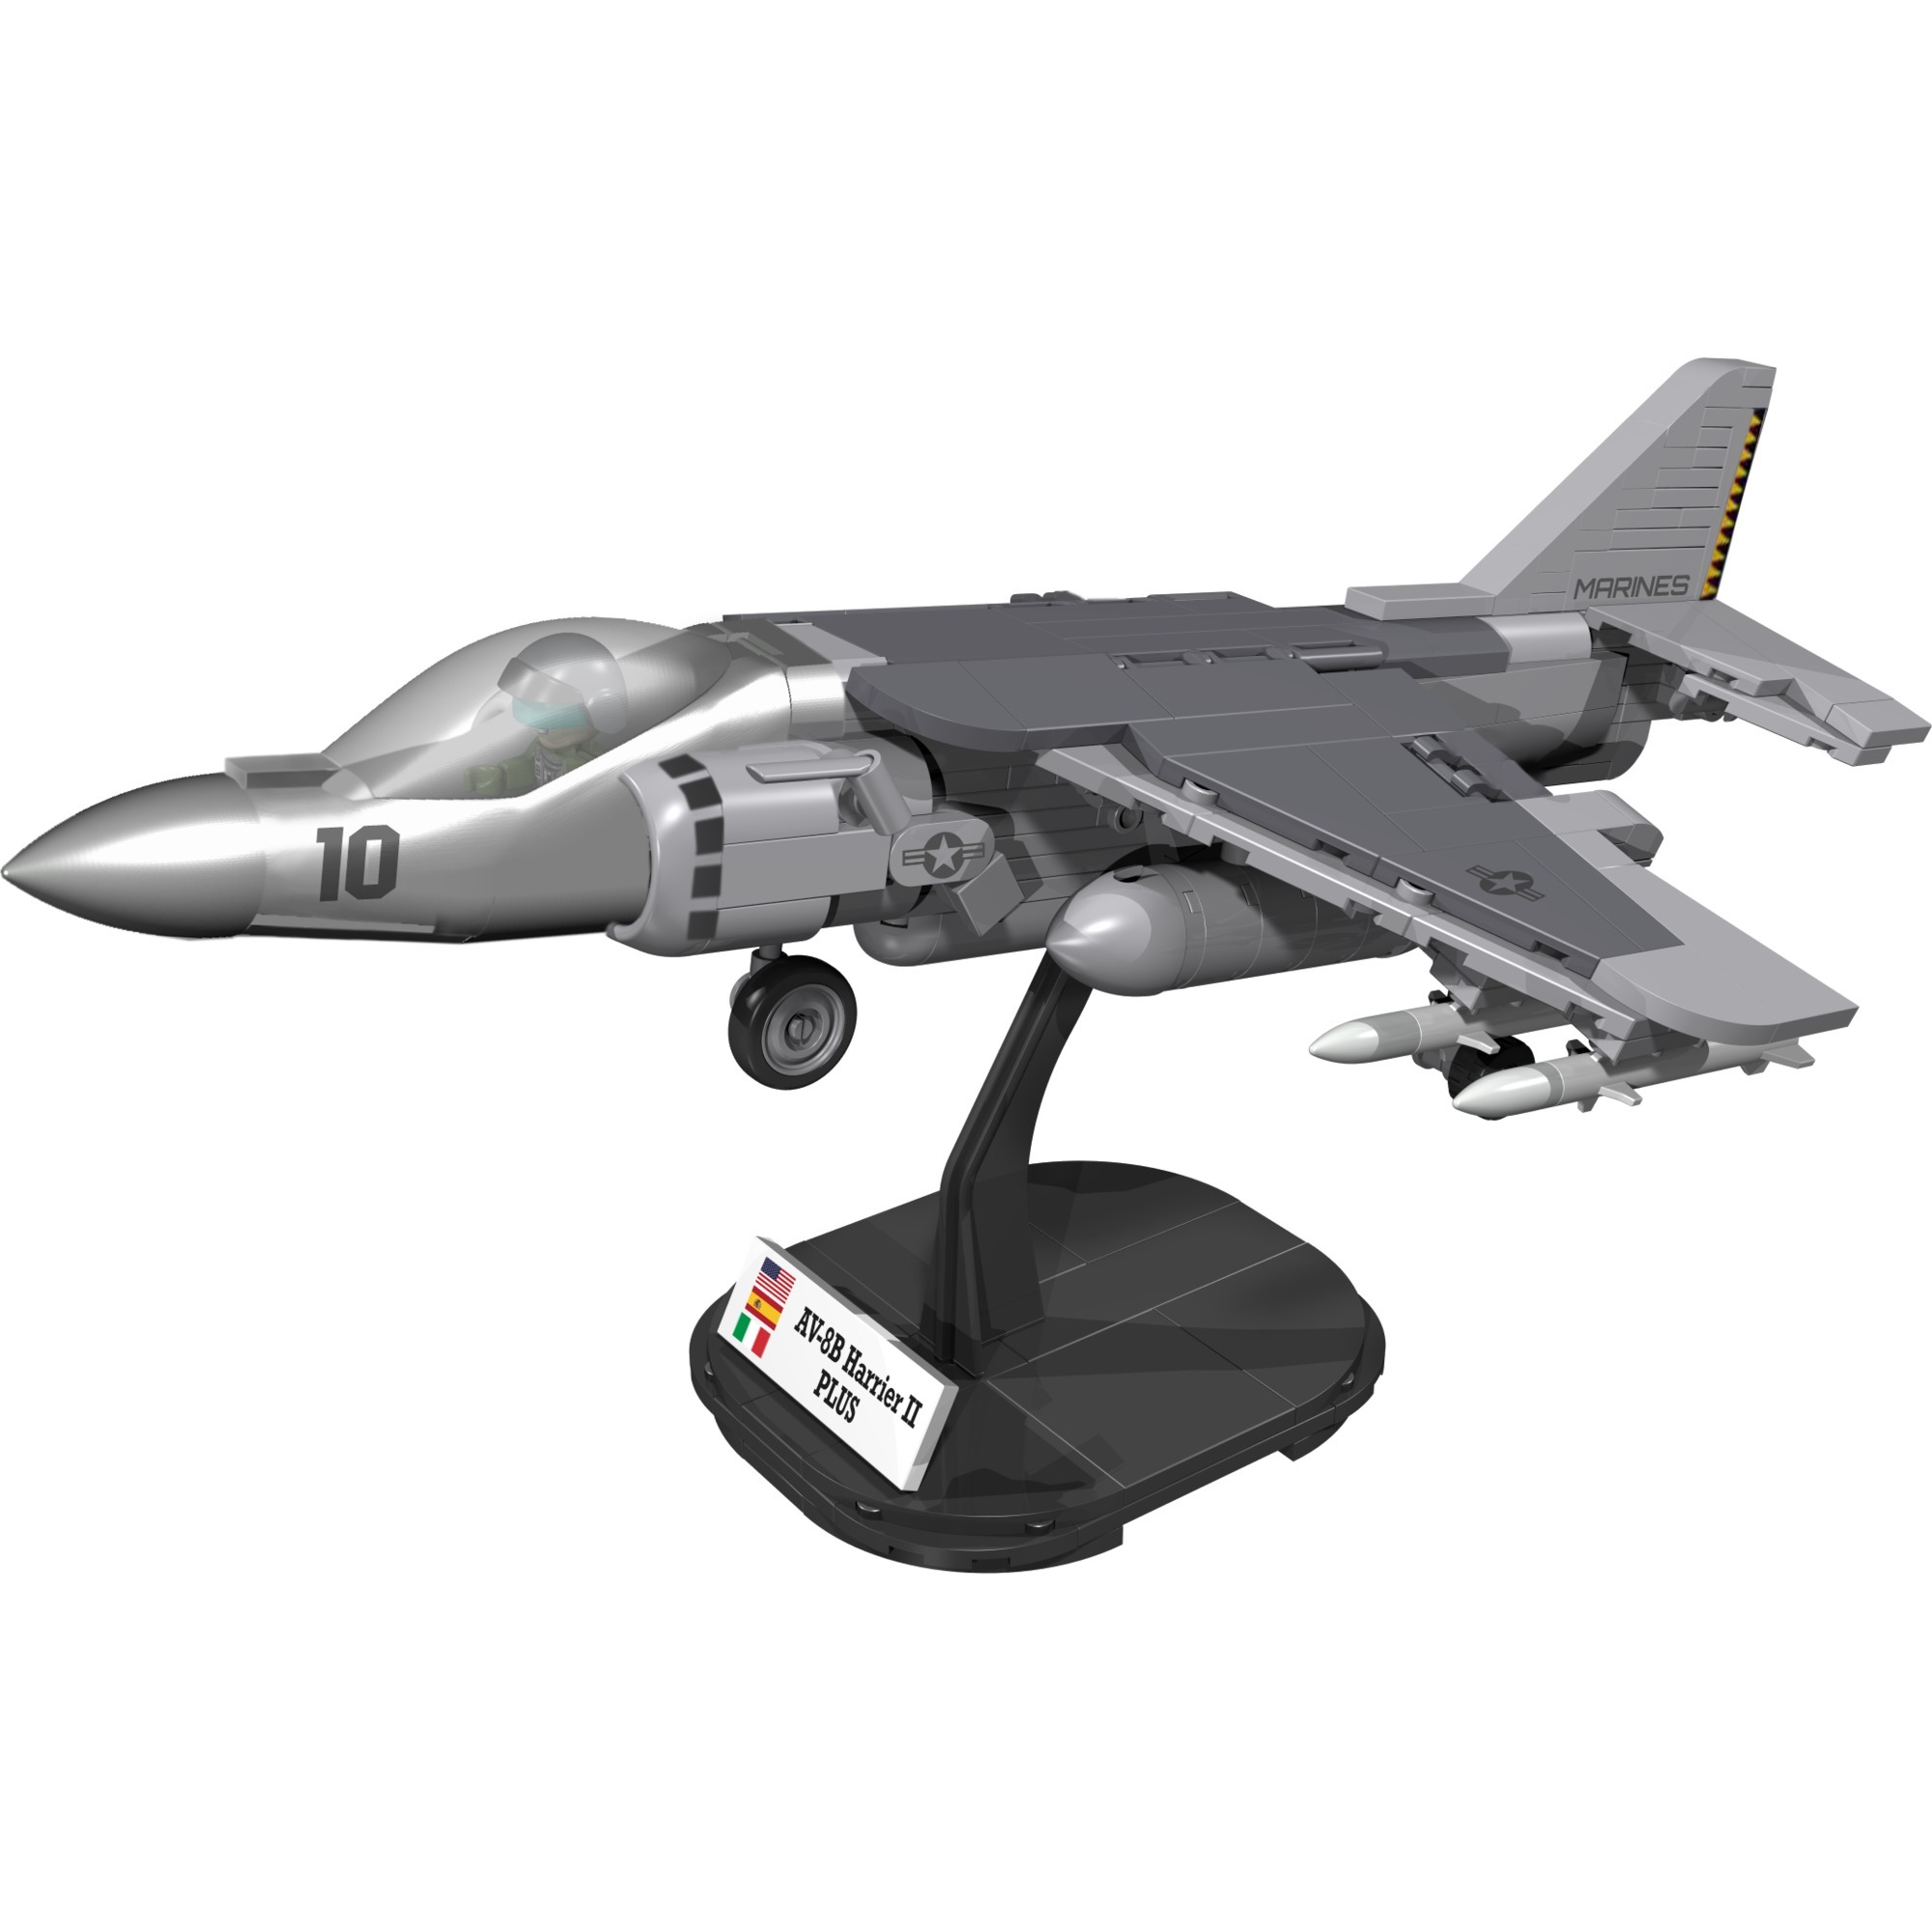 Image of Alternate - Armed Forces AV-88 Harrier II Plus, Konstruktionsspielzeug online einkaufen bei Alternate